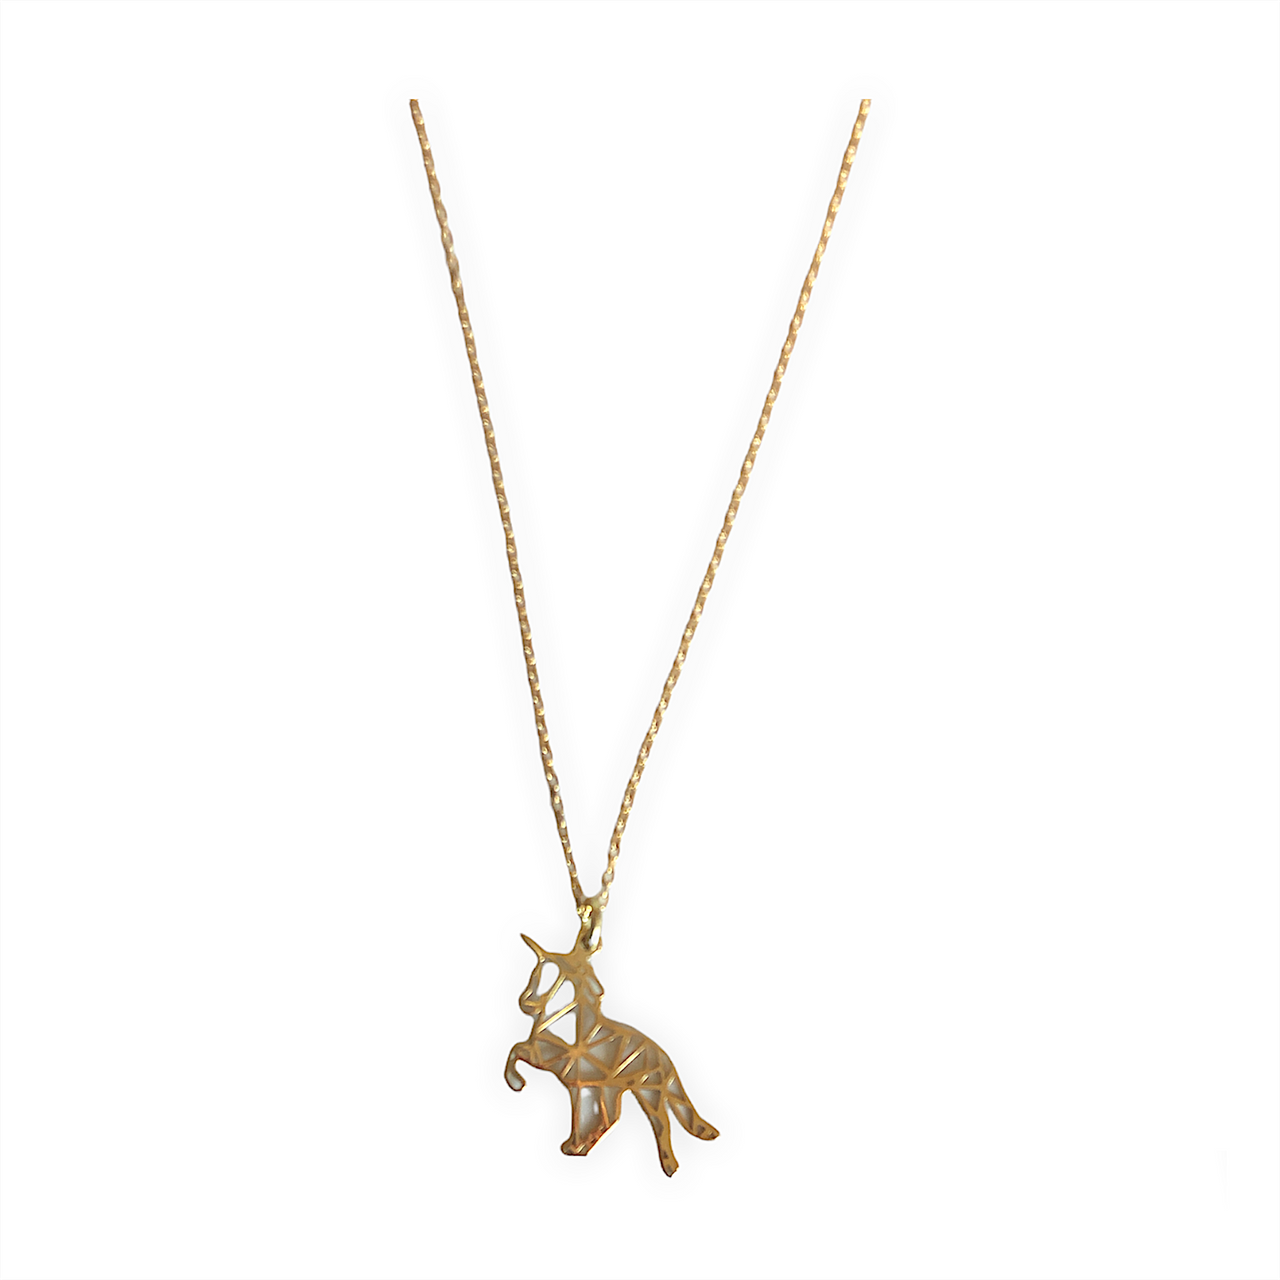 Collar extensible en plata de ley bañado en oro de 18k. Un original unicornio de origami en plata 925. Este collar es una pieza ideal para todos los amantes de los caballos.